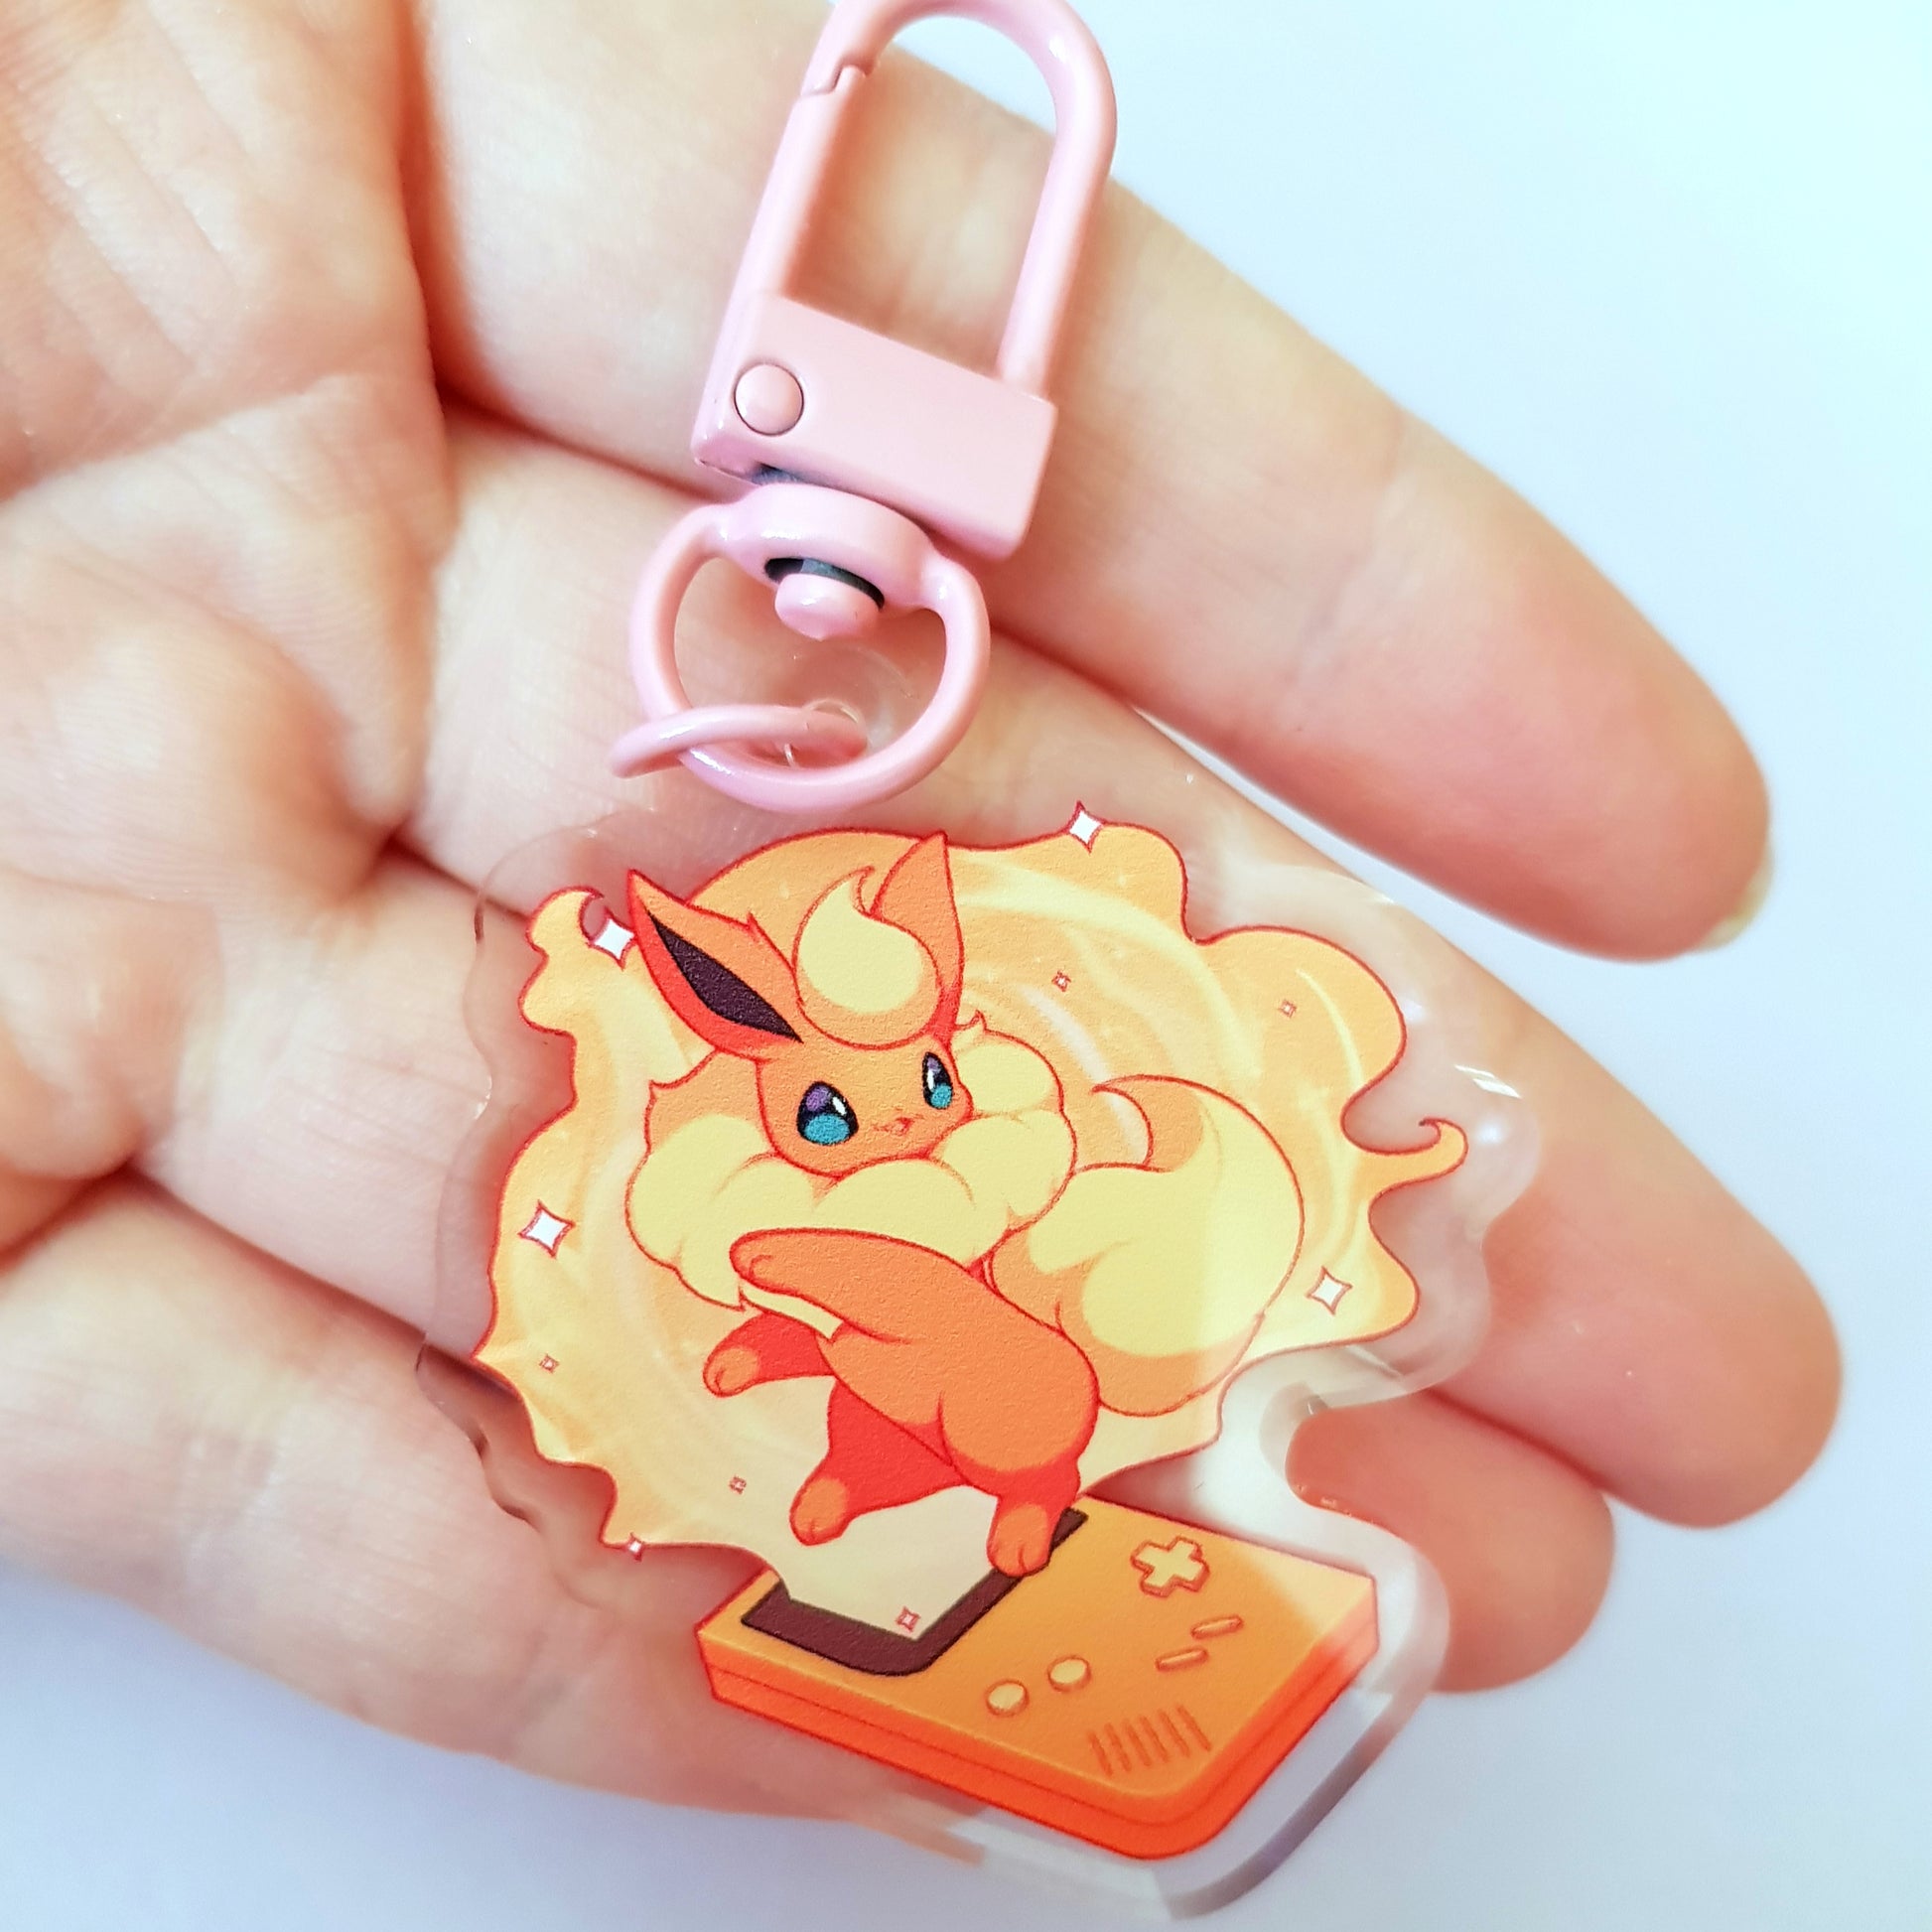 Eeveelutions Pokemon Acrylic Keychain